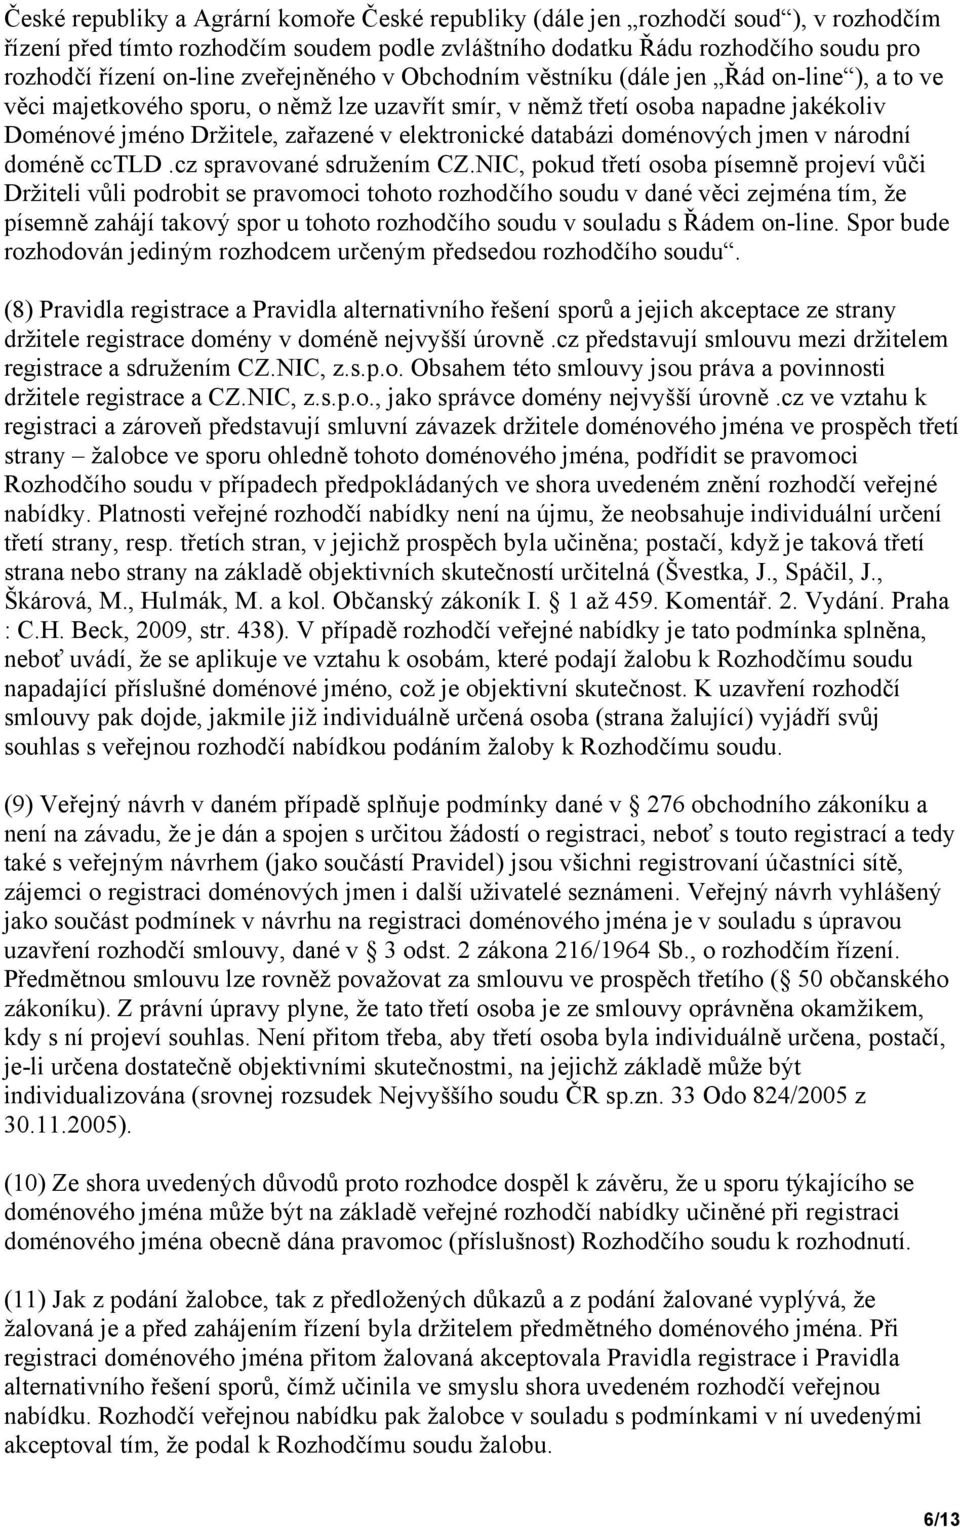 elektronické databázi doménových jmen v národní doméně cctld.cz spravované sdružením CZ.